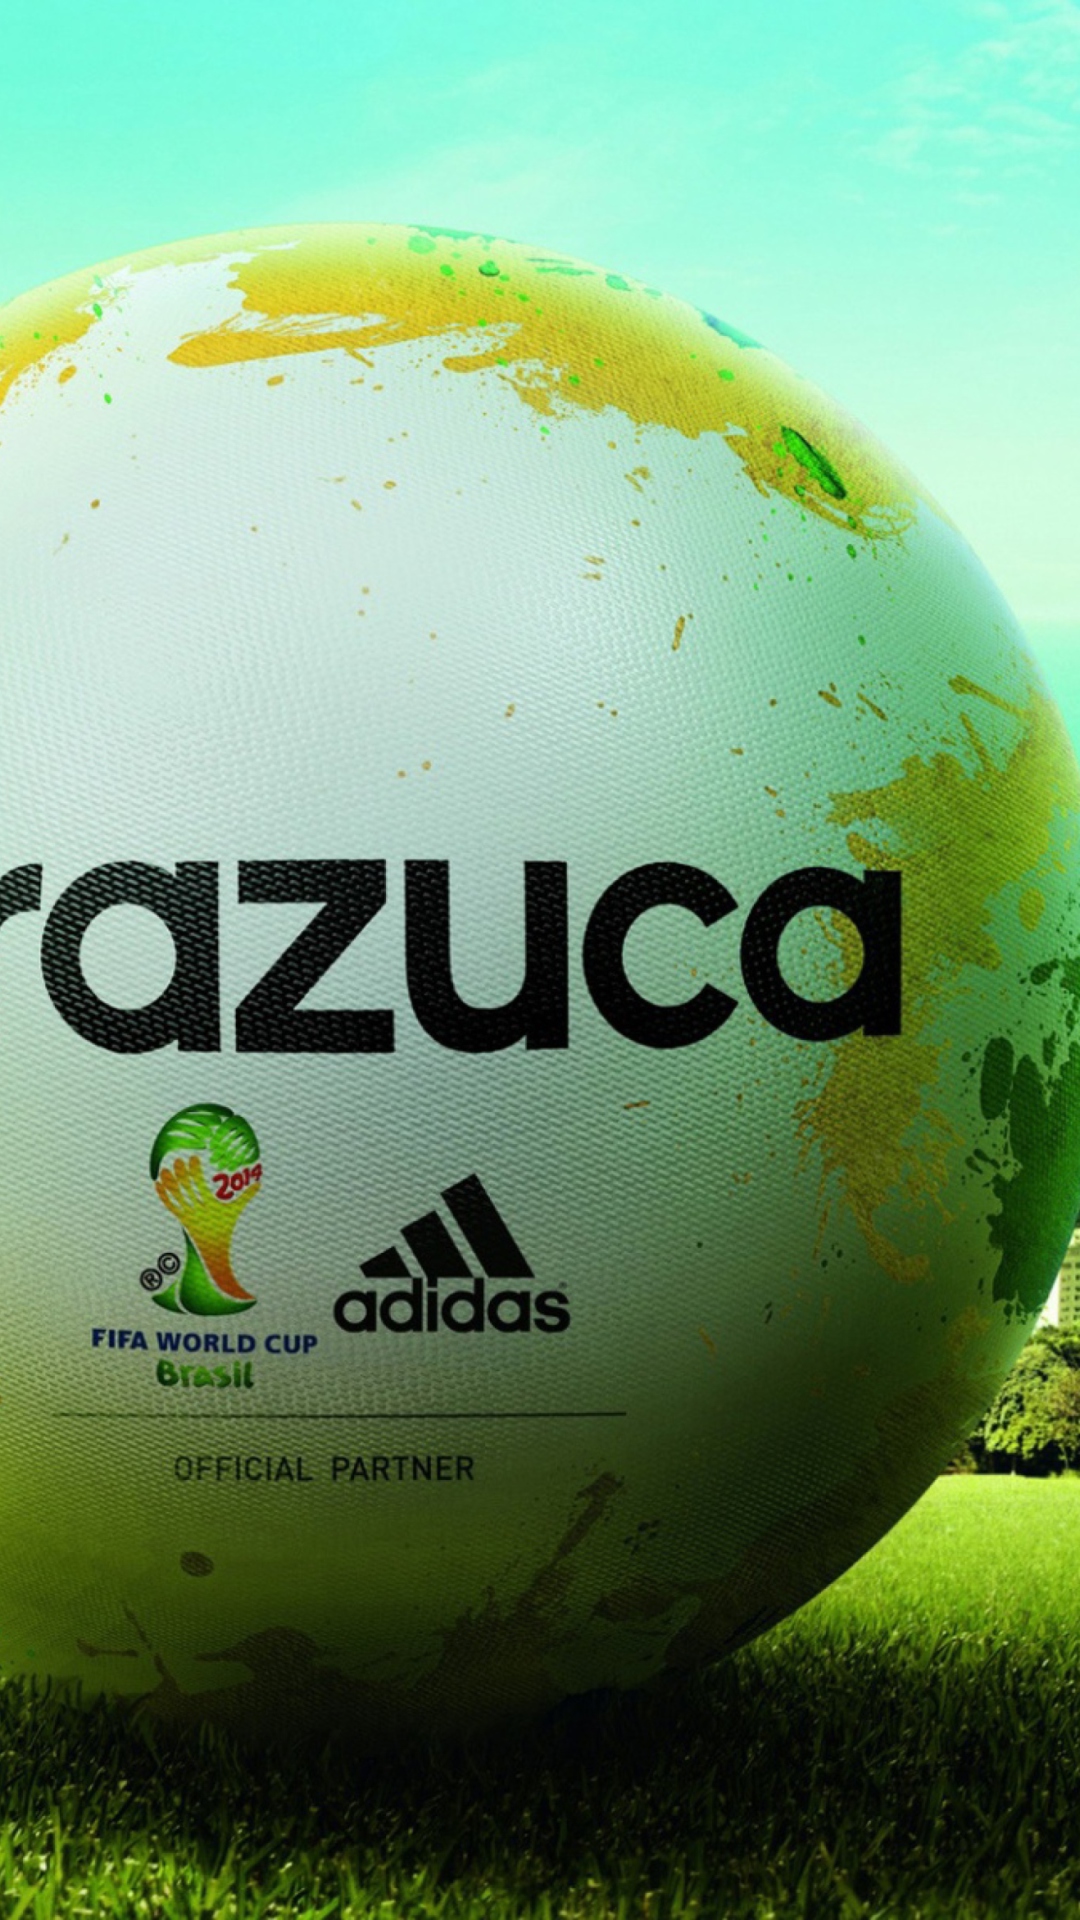 Fondo de pantalla Adidas Brazuca Match Ball FIFA World Cup 2014 1080x1920